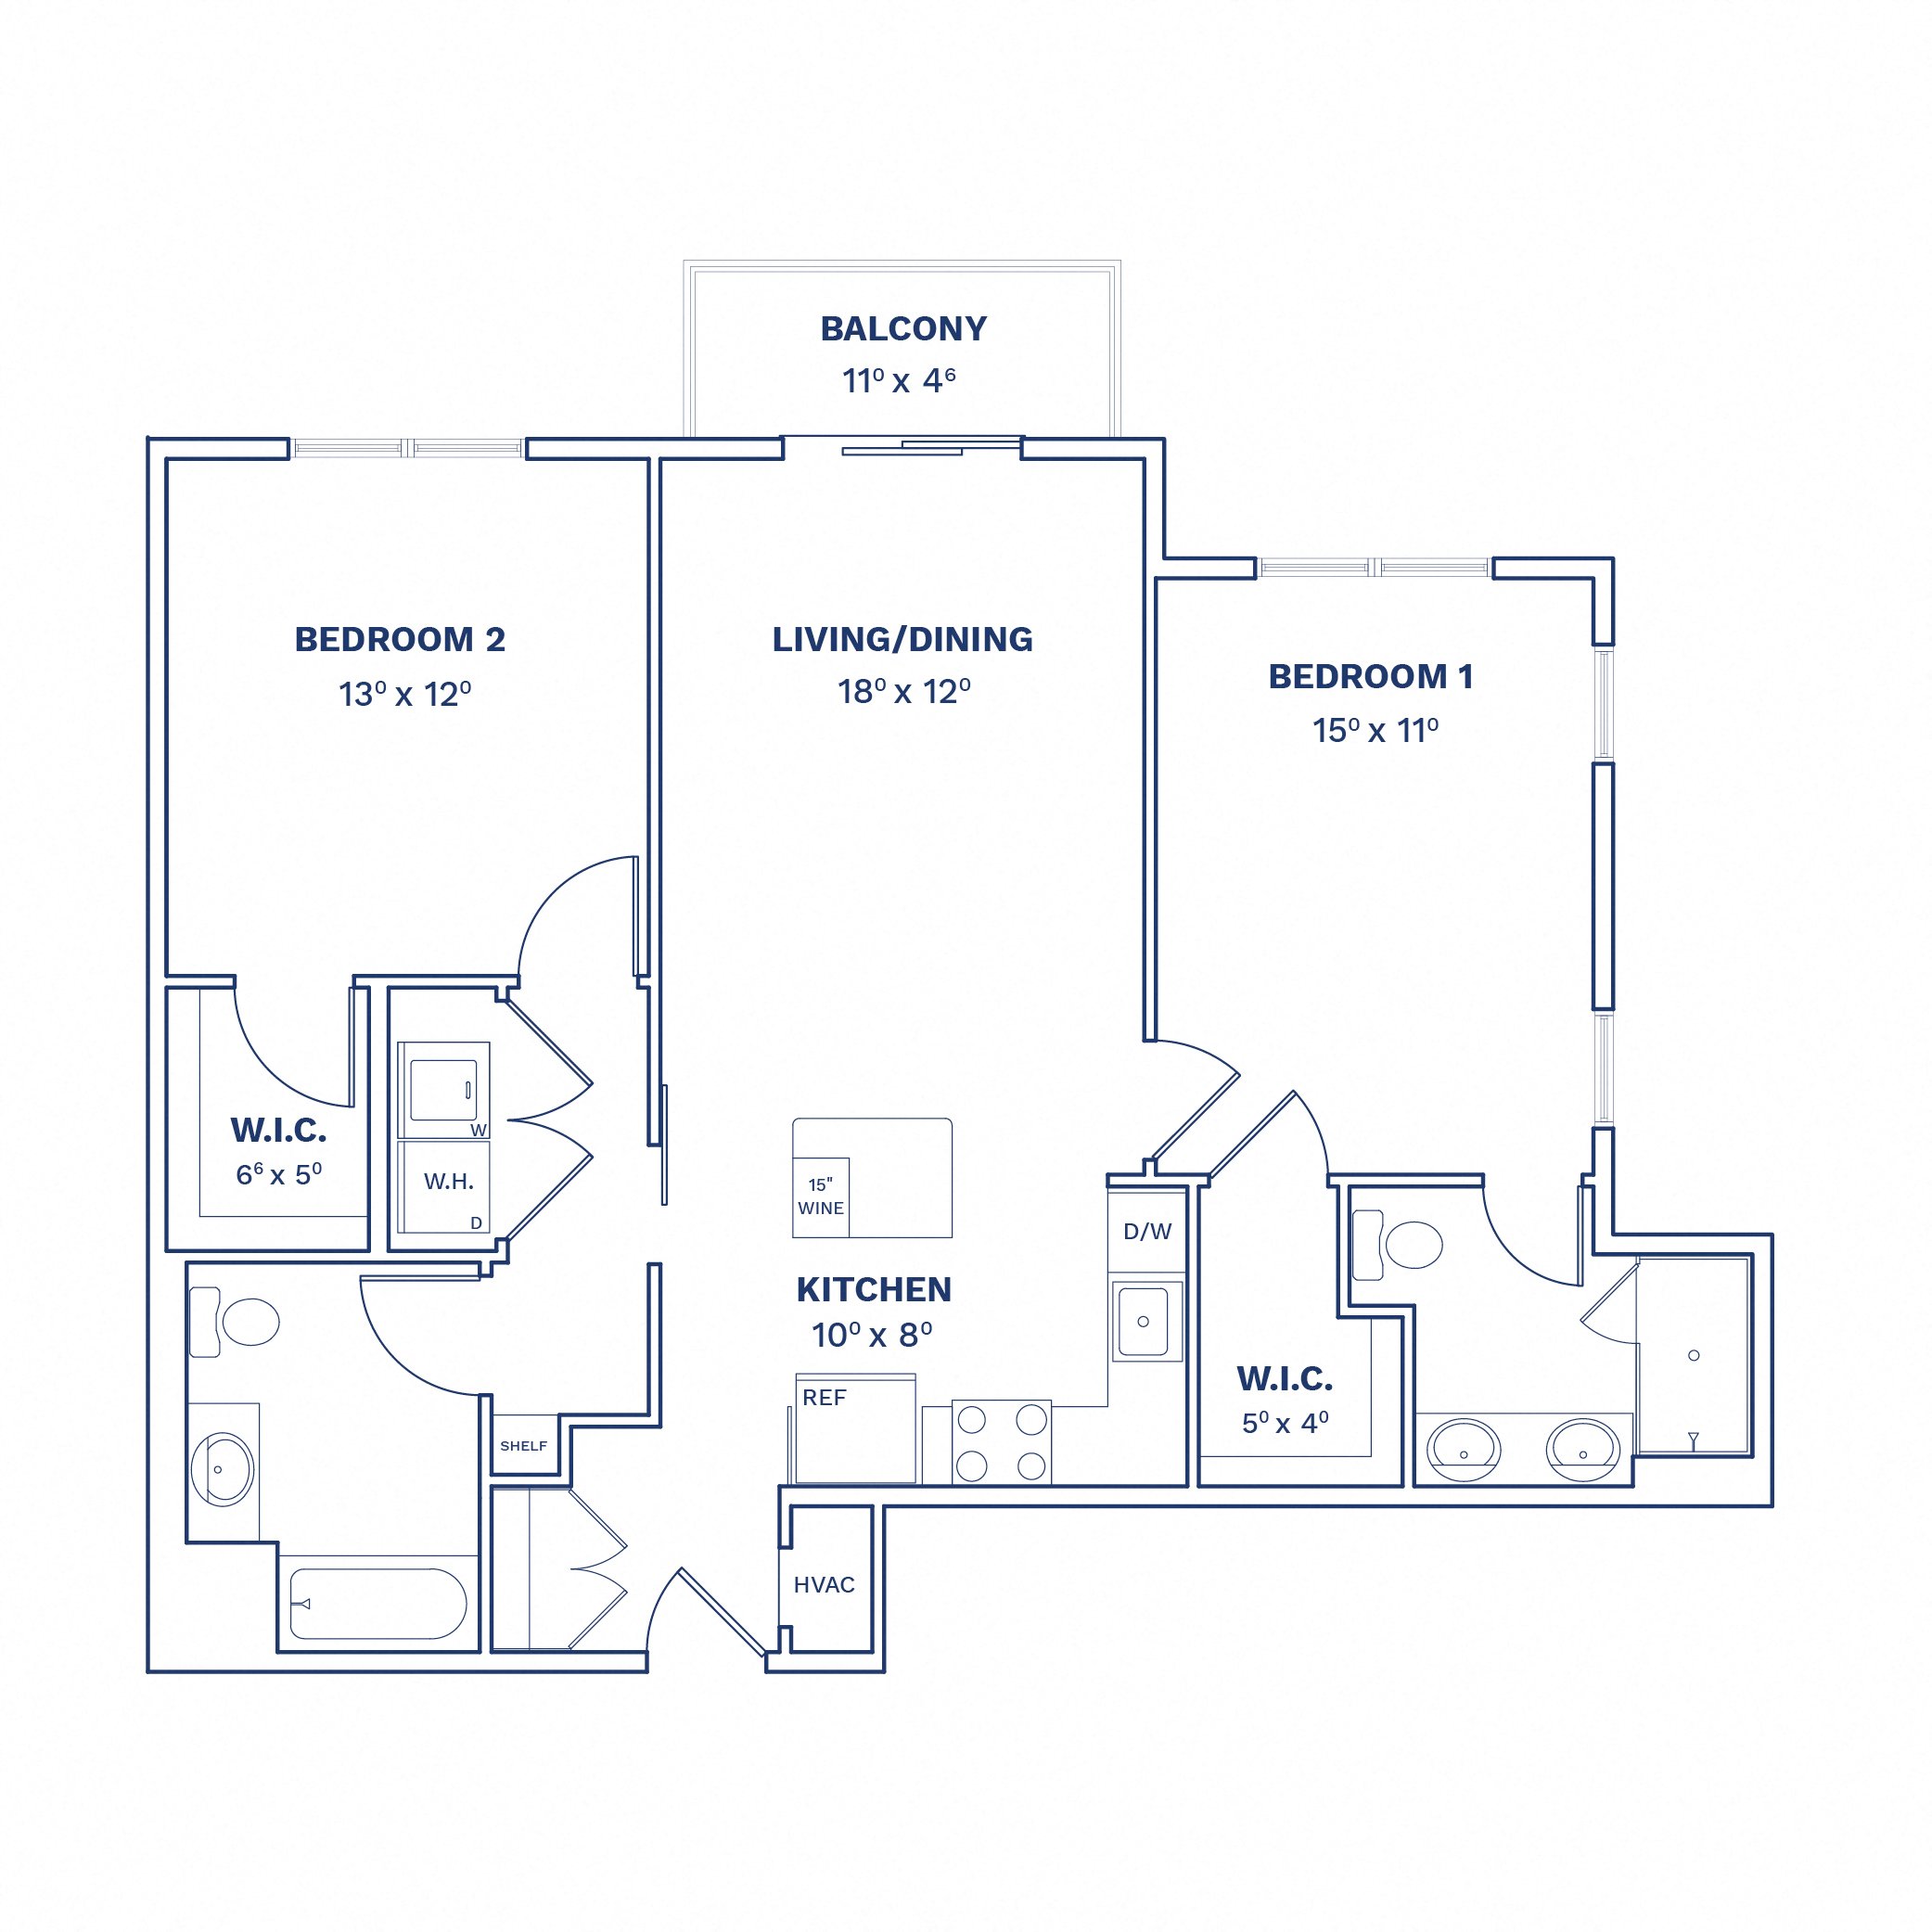 Floorplan of Unit 2 Bed/2 Bath-B1.1